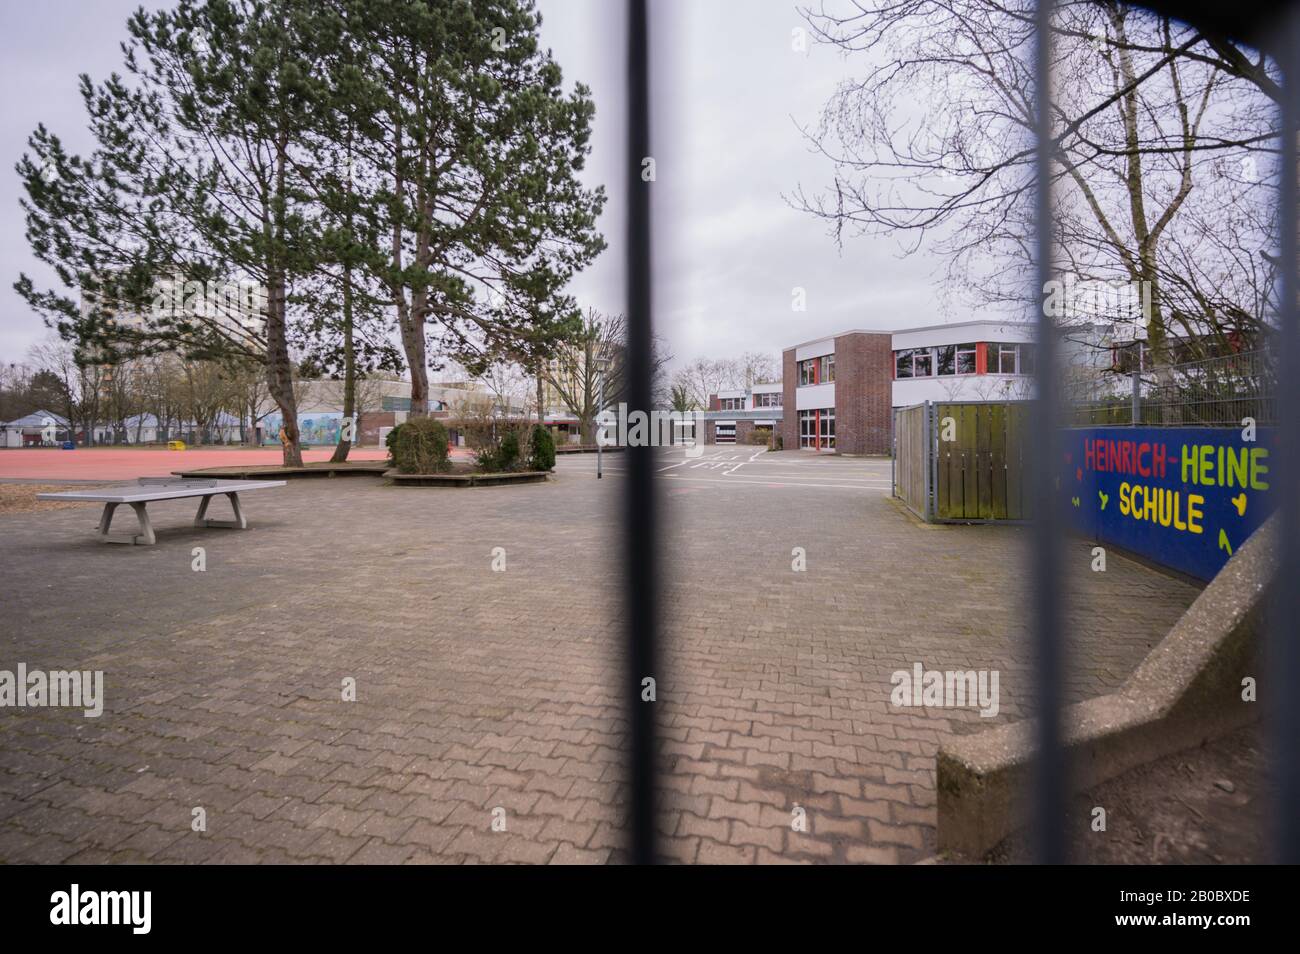 Hanau, Deutschland. Februar 2020. Der Schulhof der Heinrich Heine Schule im  Hanauer Stadtteil Kesselstadt steht leer, die Schule ist geschlossen.  Mehrere Menschen wurden getötet und weitere verletzt, als in Hanau Schüsse  auf